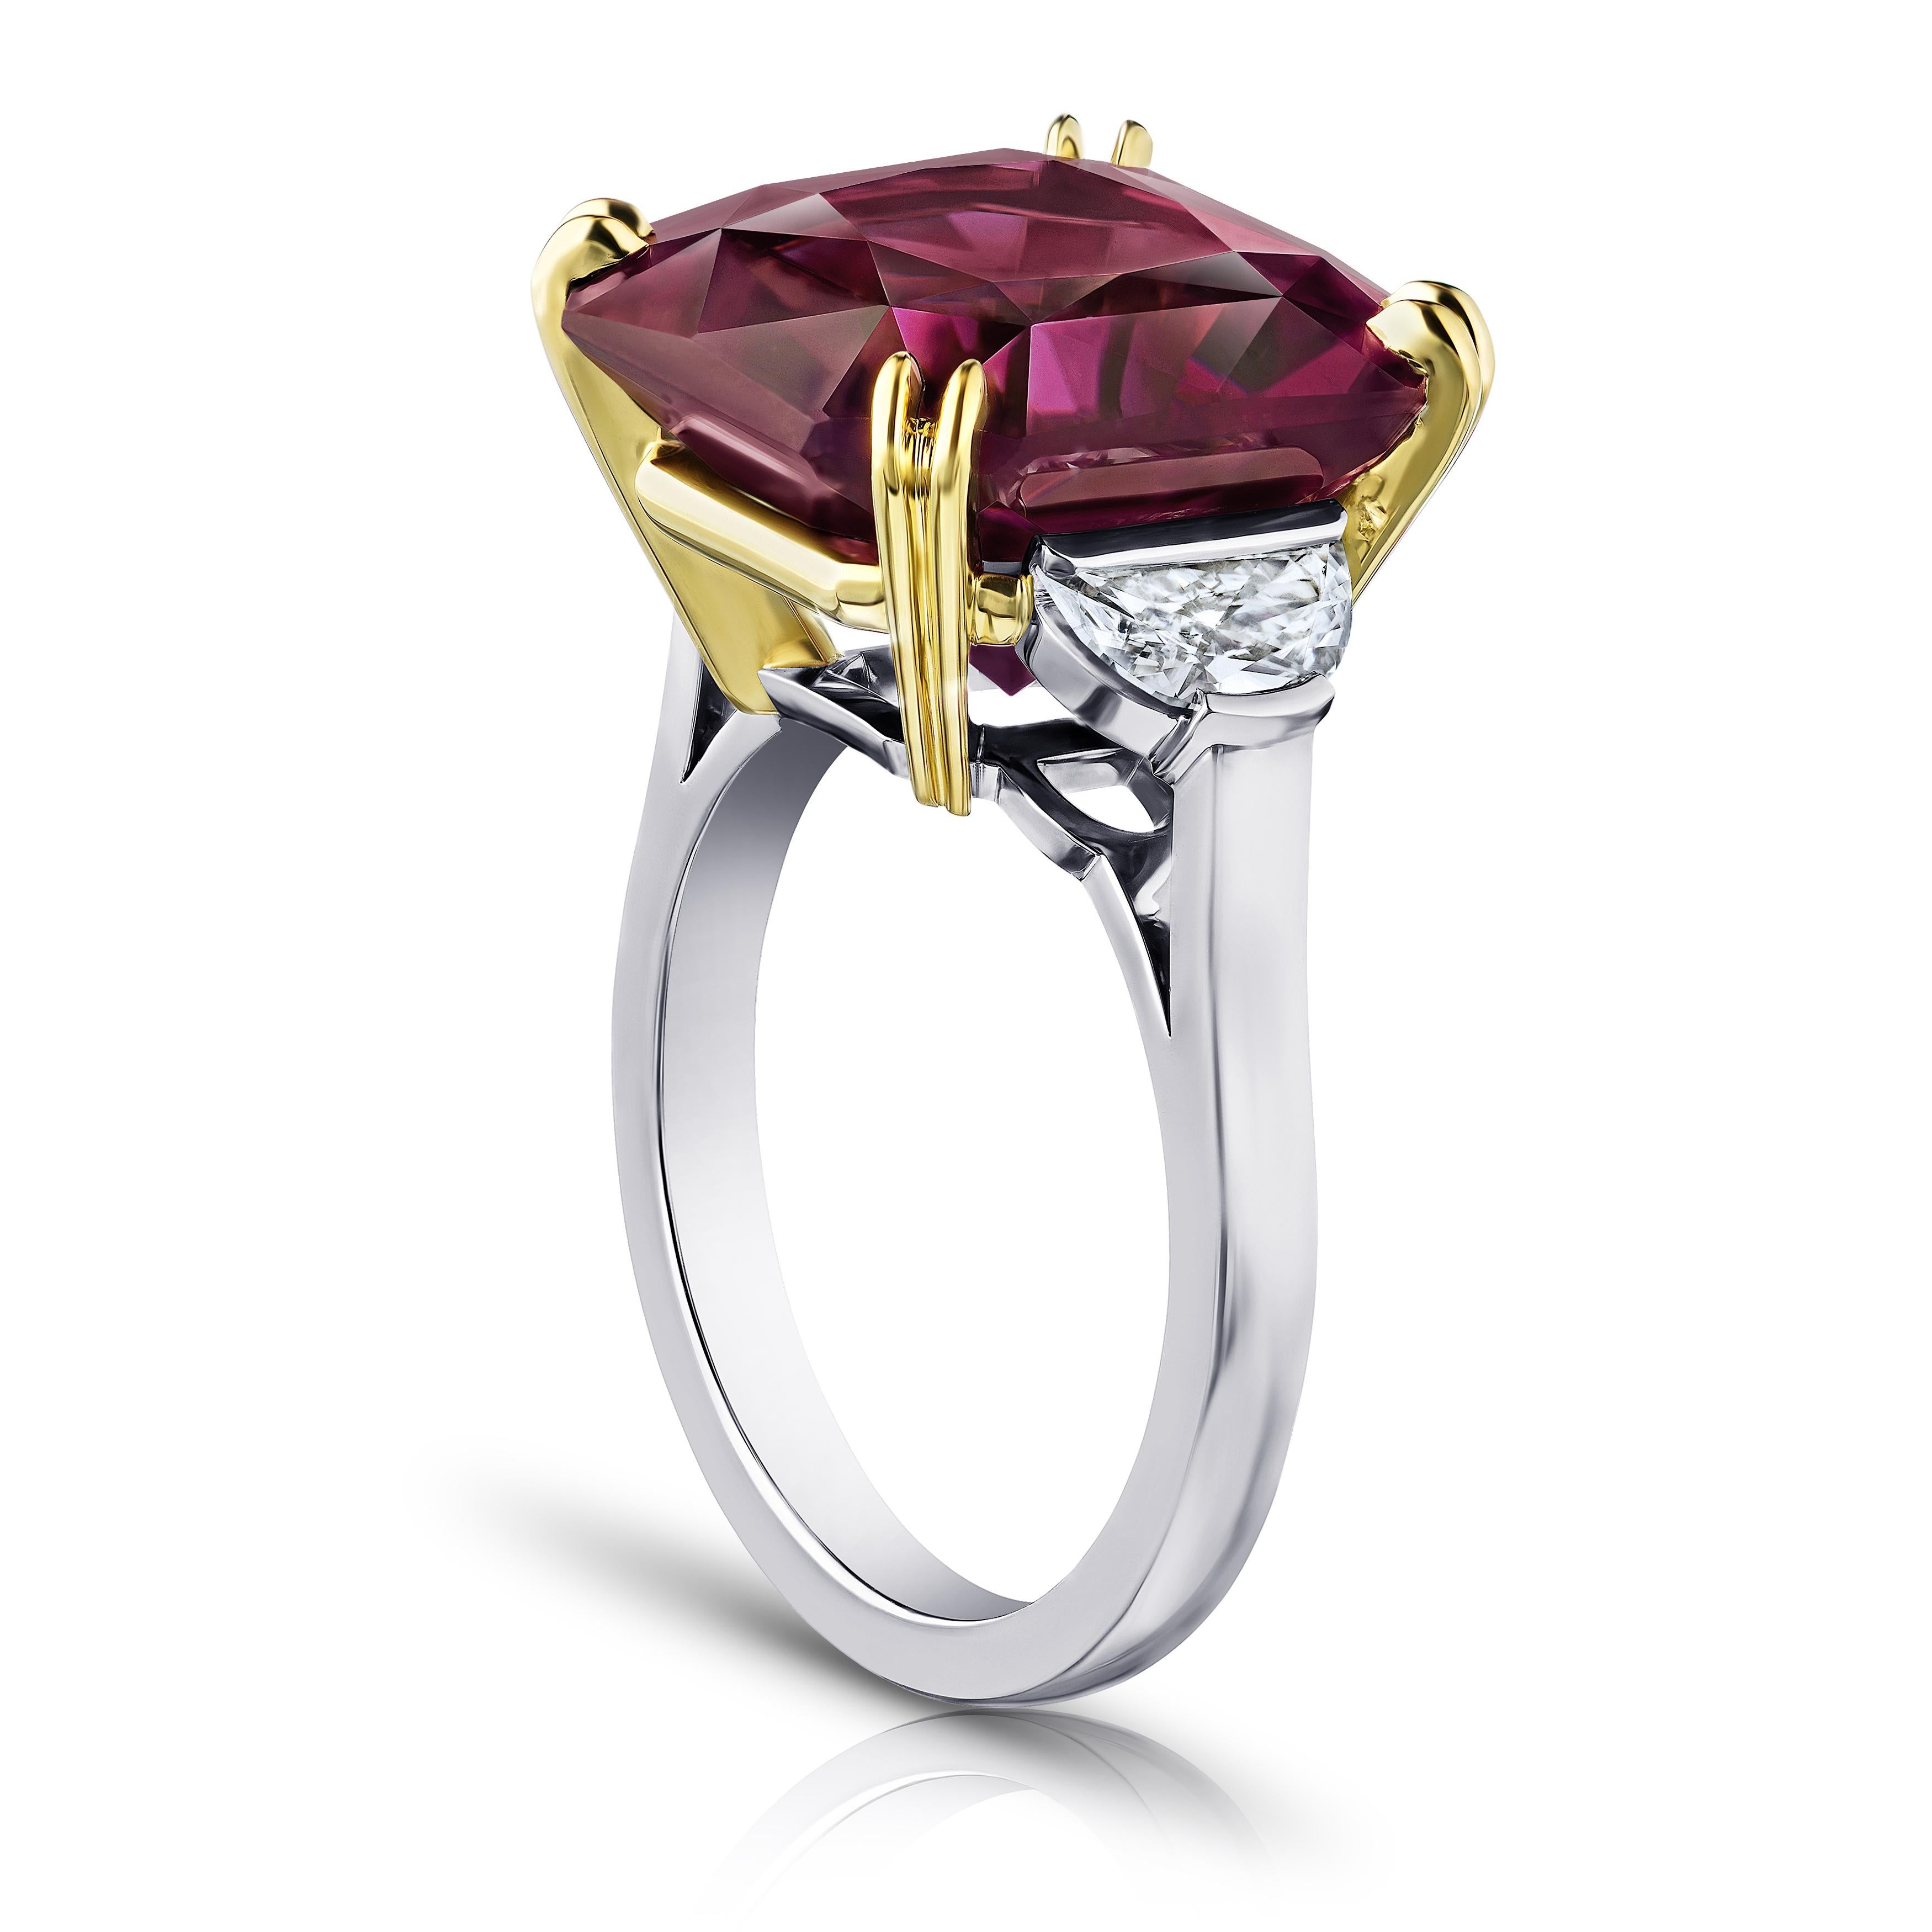 14.61 Karat violetter Spinell im Brillantschliff mit Halbmonddiamanten von 0,67 Karat in einem Platinring gefasst. Größe 7.
